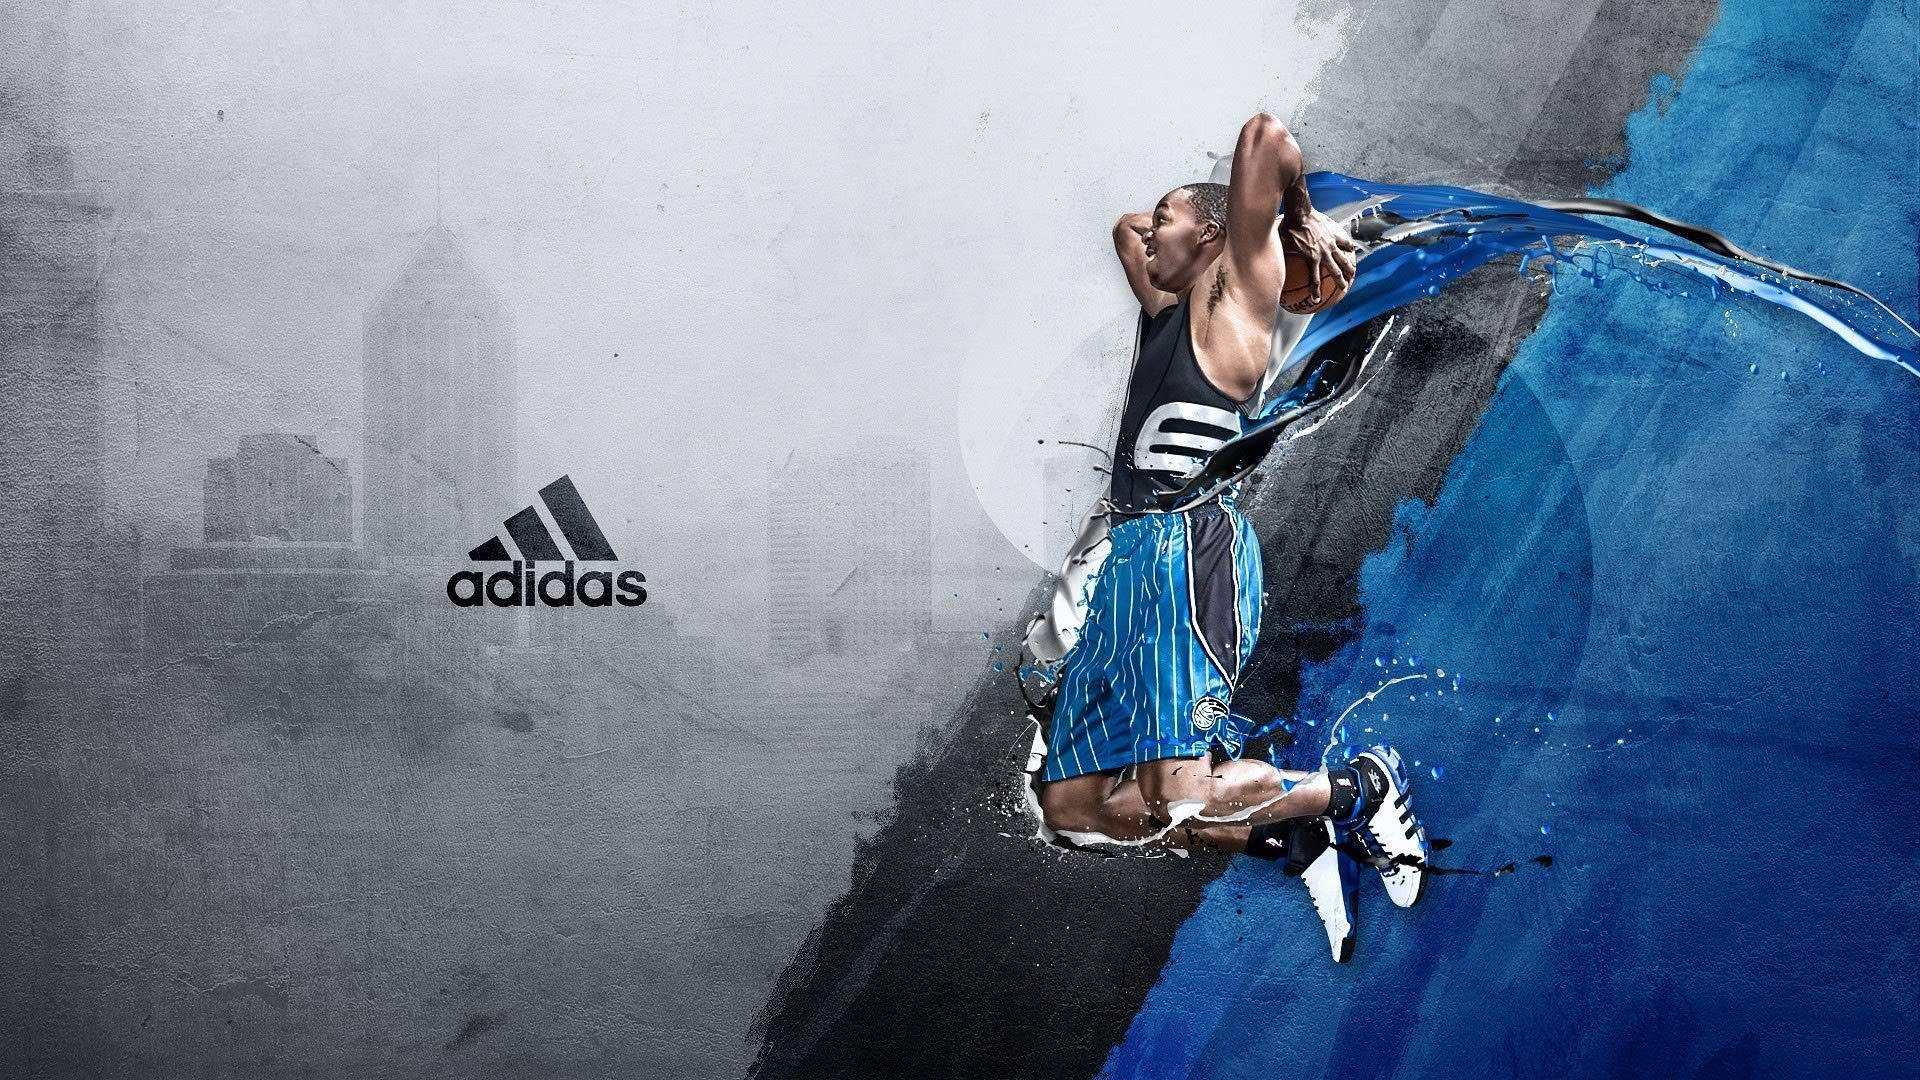 Adidas Mærke Logo Med Dwight Howard Wallpaper